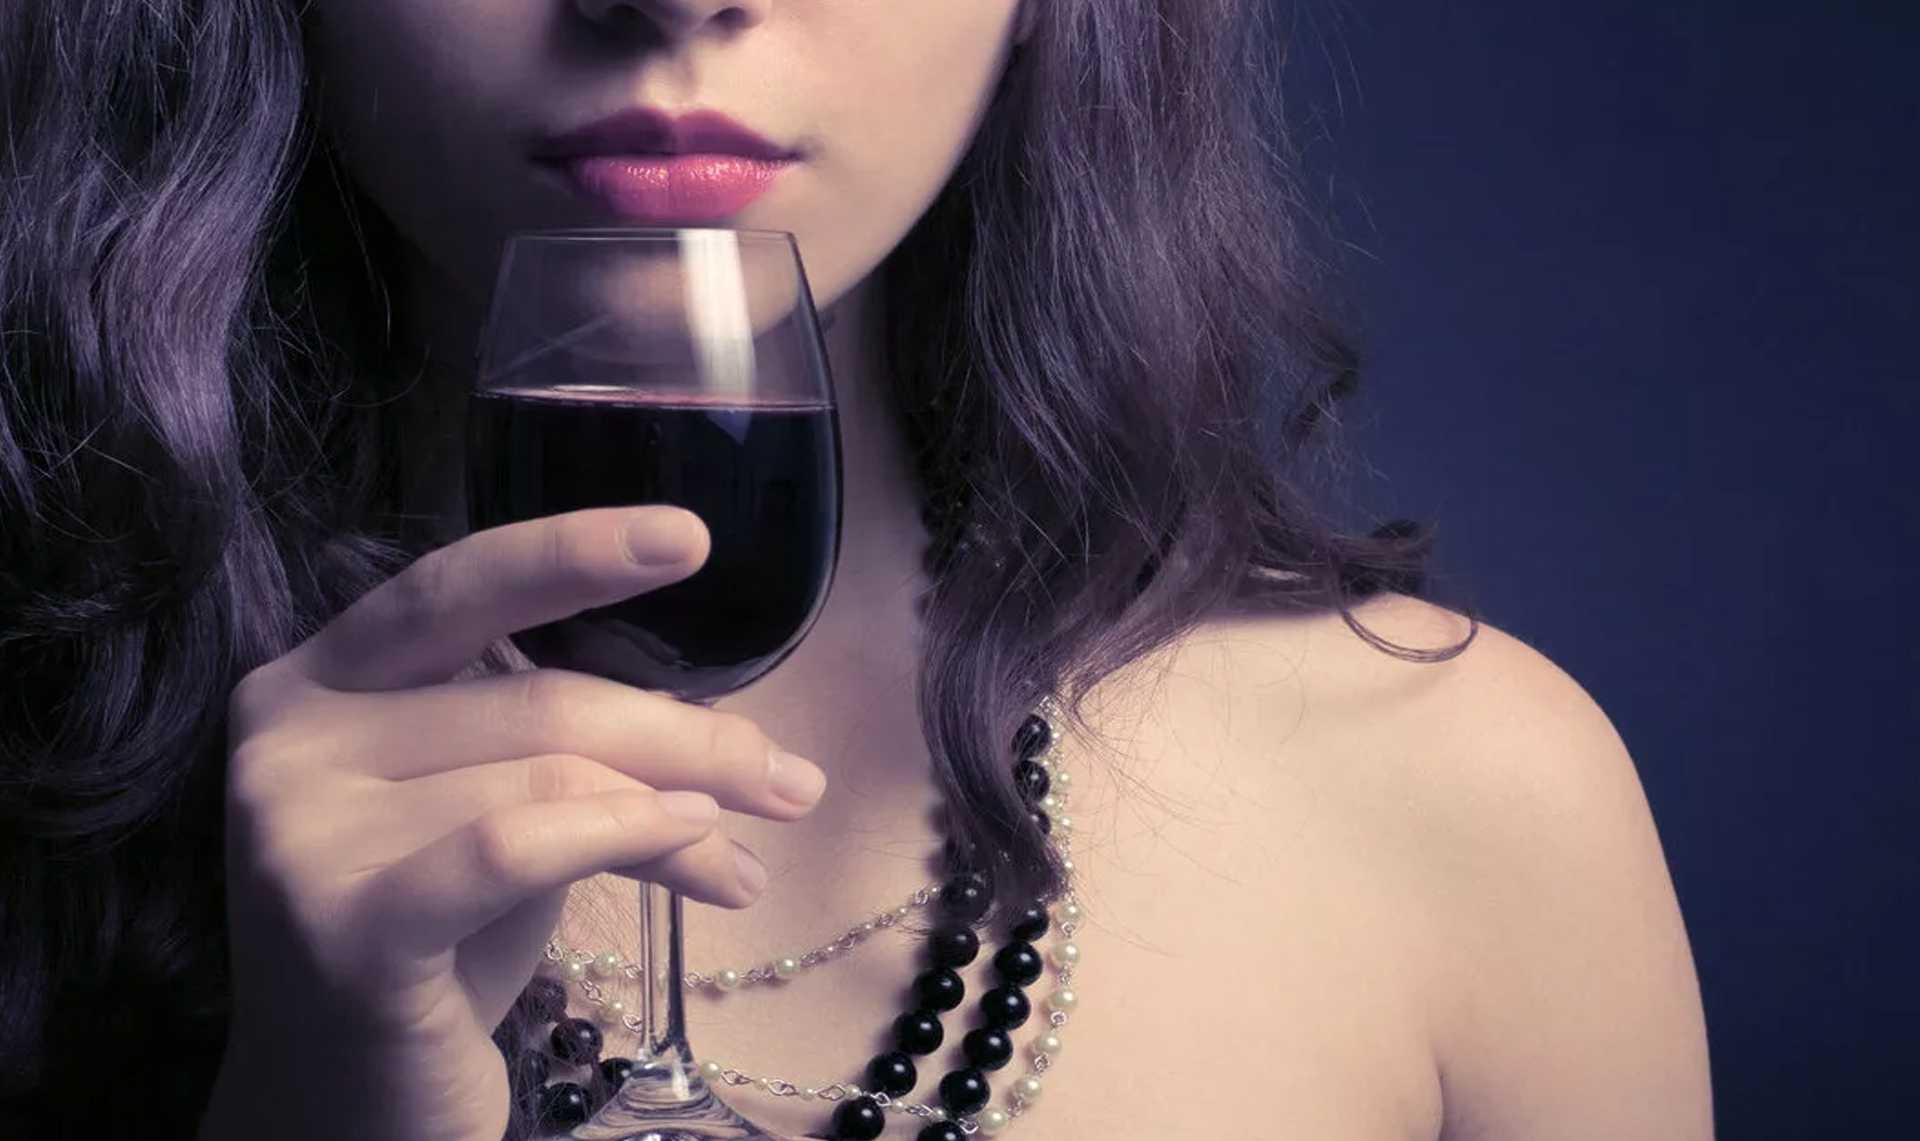 Наш постоянный автор Алексей Беляков рассказал, как выглядит со стороны выпившая девушка, и описал три стадии женского опьянения